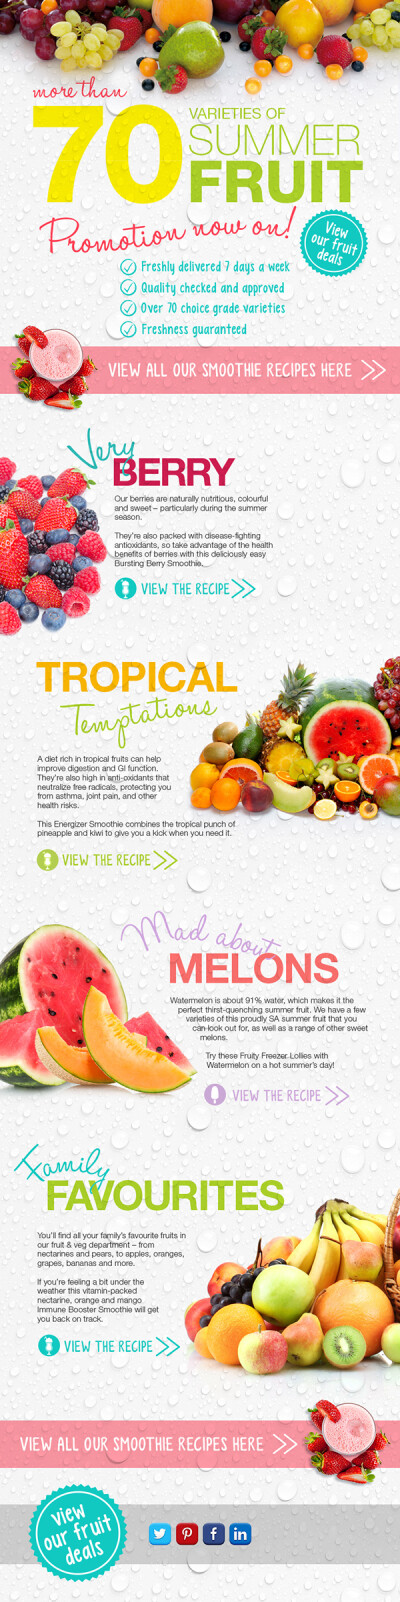 【夏季水果】Summer Fruit Promotion (Checkers Supermarket) : Some elements of a campaign to promote Checkers' large range of fresh fruits during the summer.
